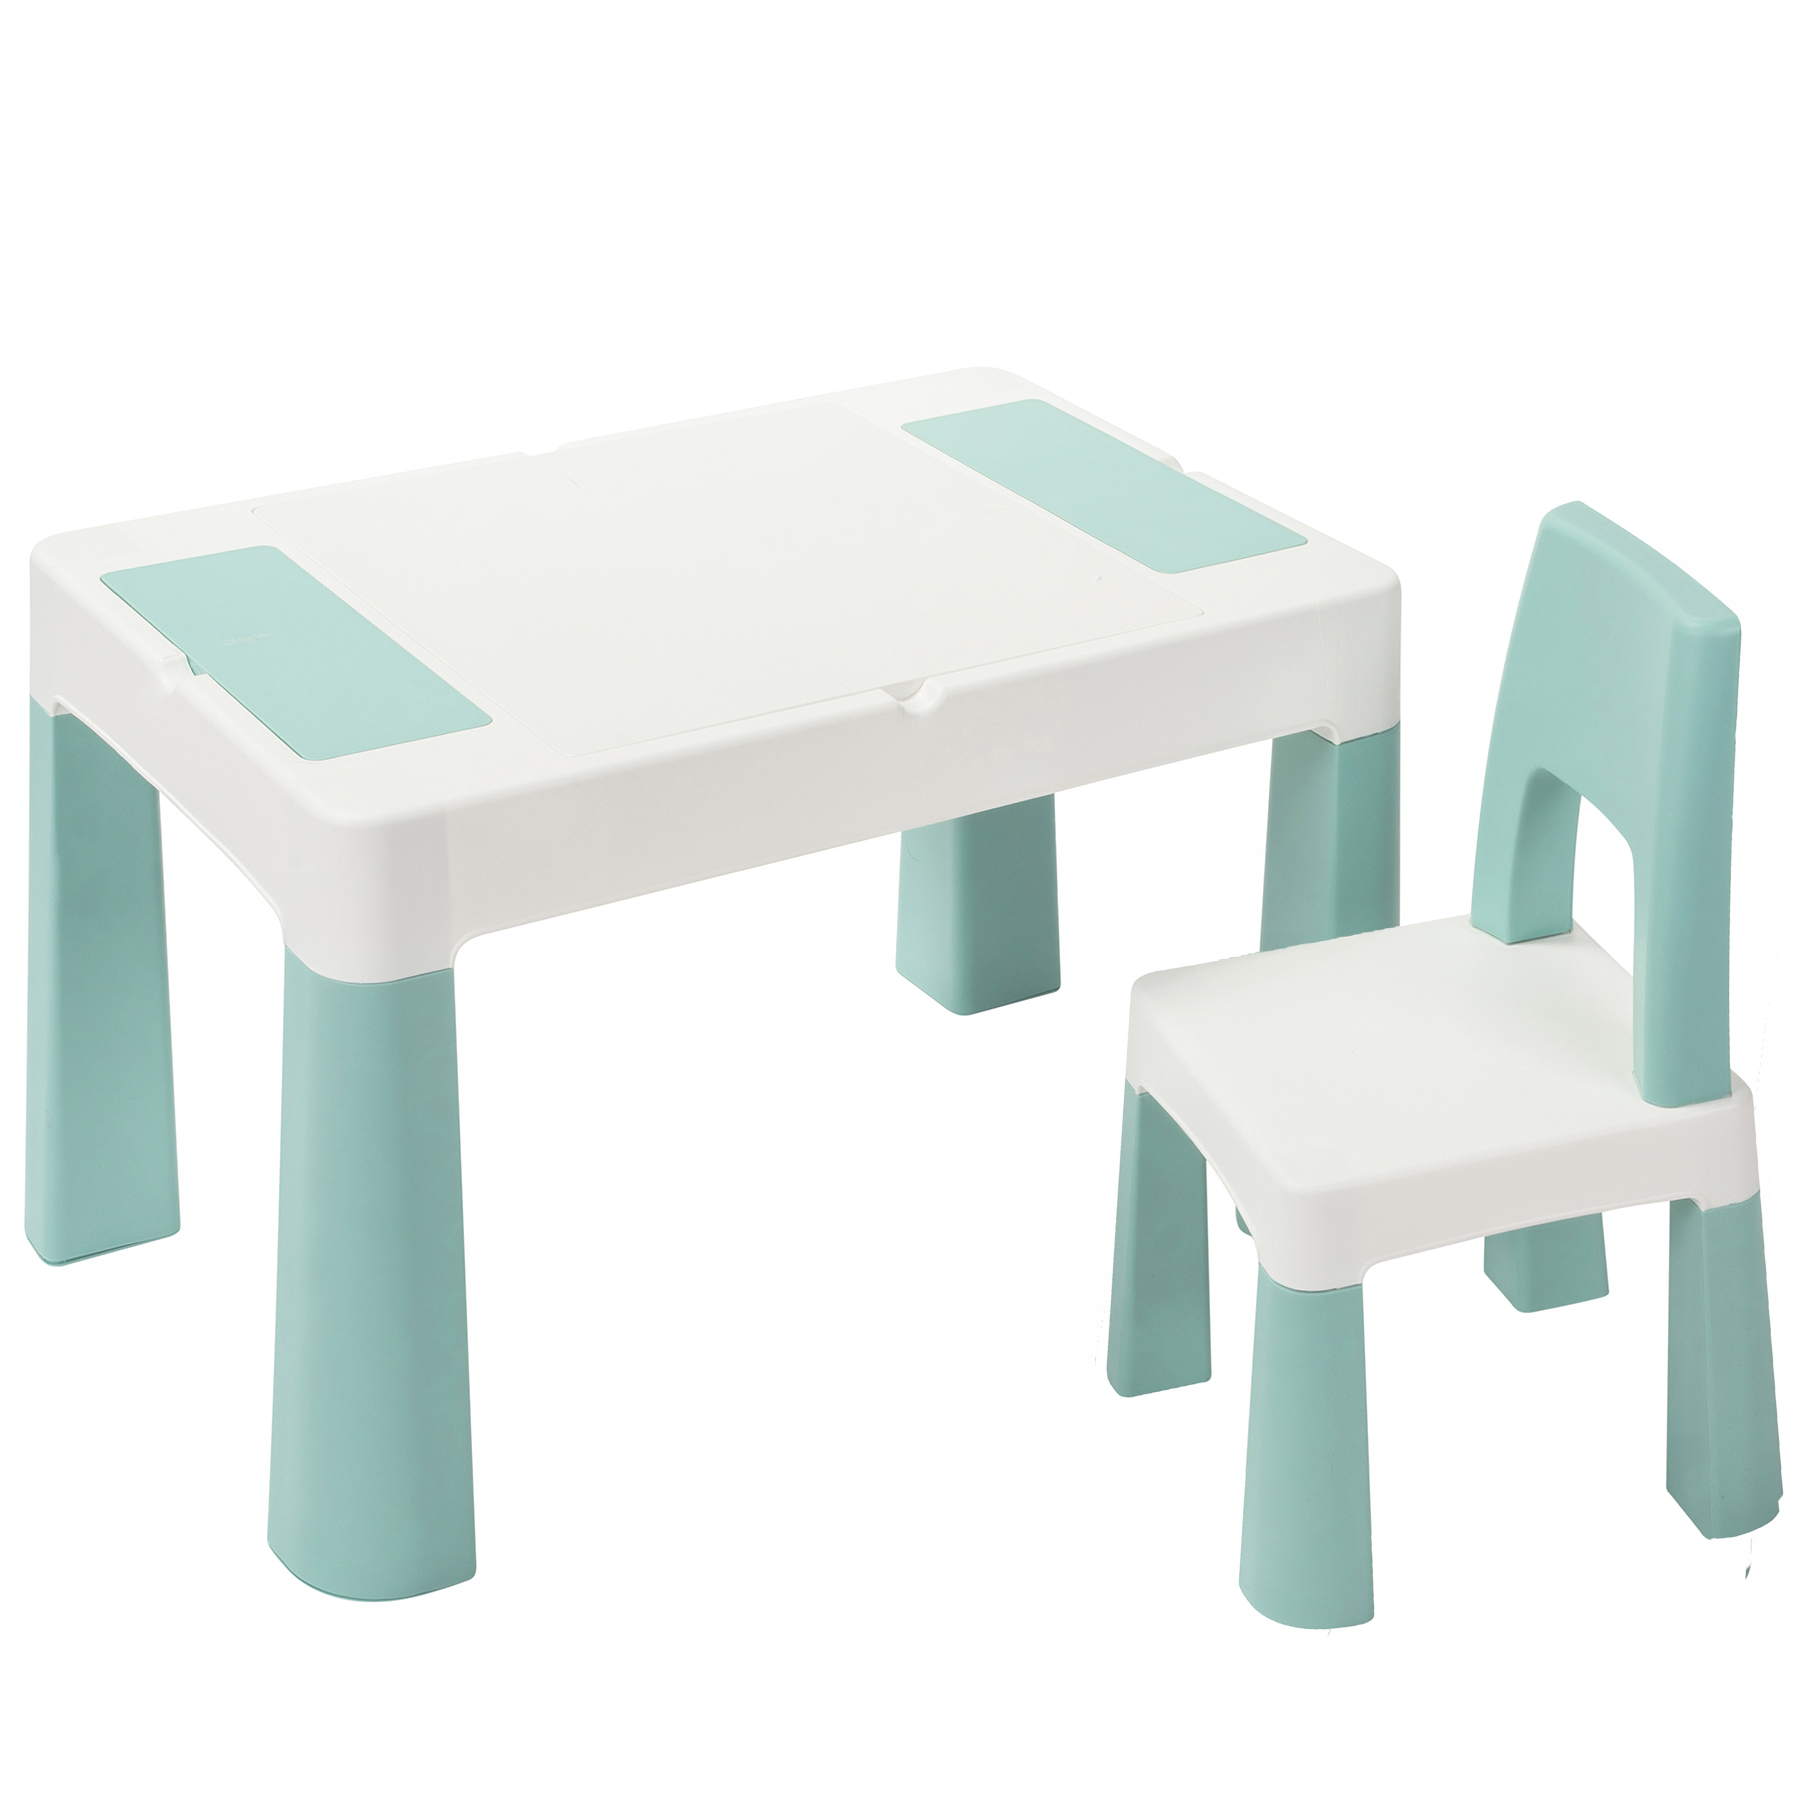 Стол и стульчик Lamosa изготовлены из прочного и безвредного пластика, который легко очищается от загрязнений — мебель можно установить и в помещении, и на улице.